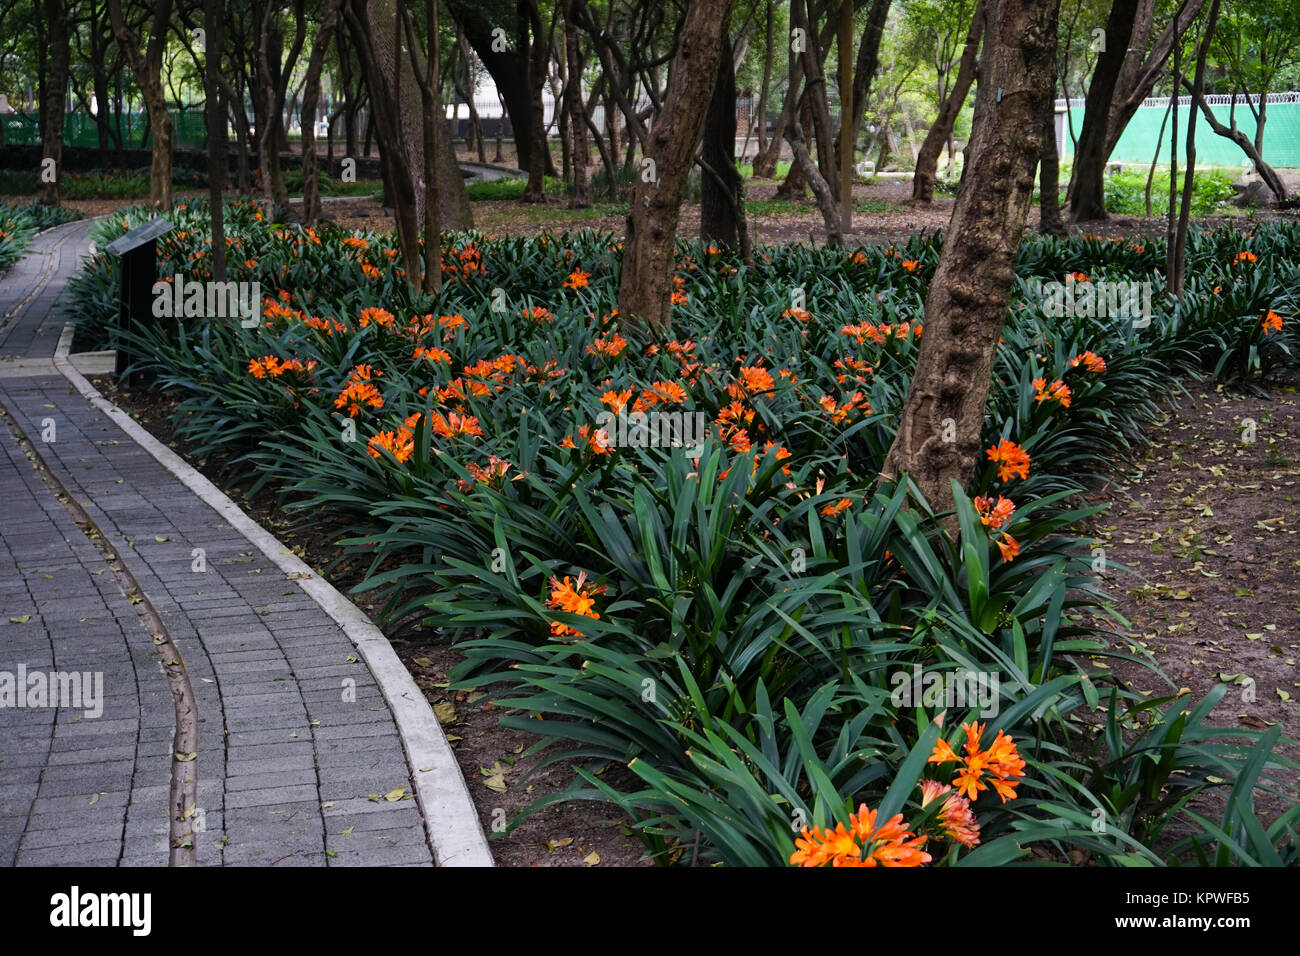 The El Jardin Sensorial (Sensory Garden) in the Jardín Botánico del Bosque de Chapultepec (Chapultepec Botanic Gardens)  in Chapultepec Park, Mexico C Stock Photo